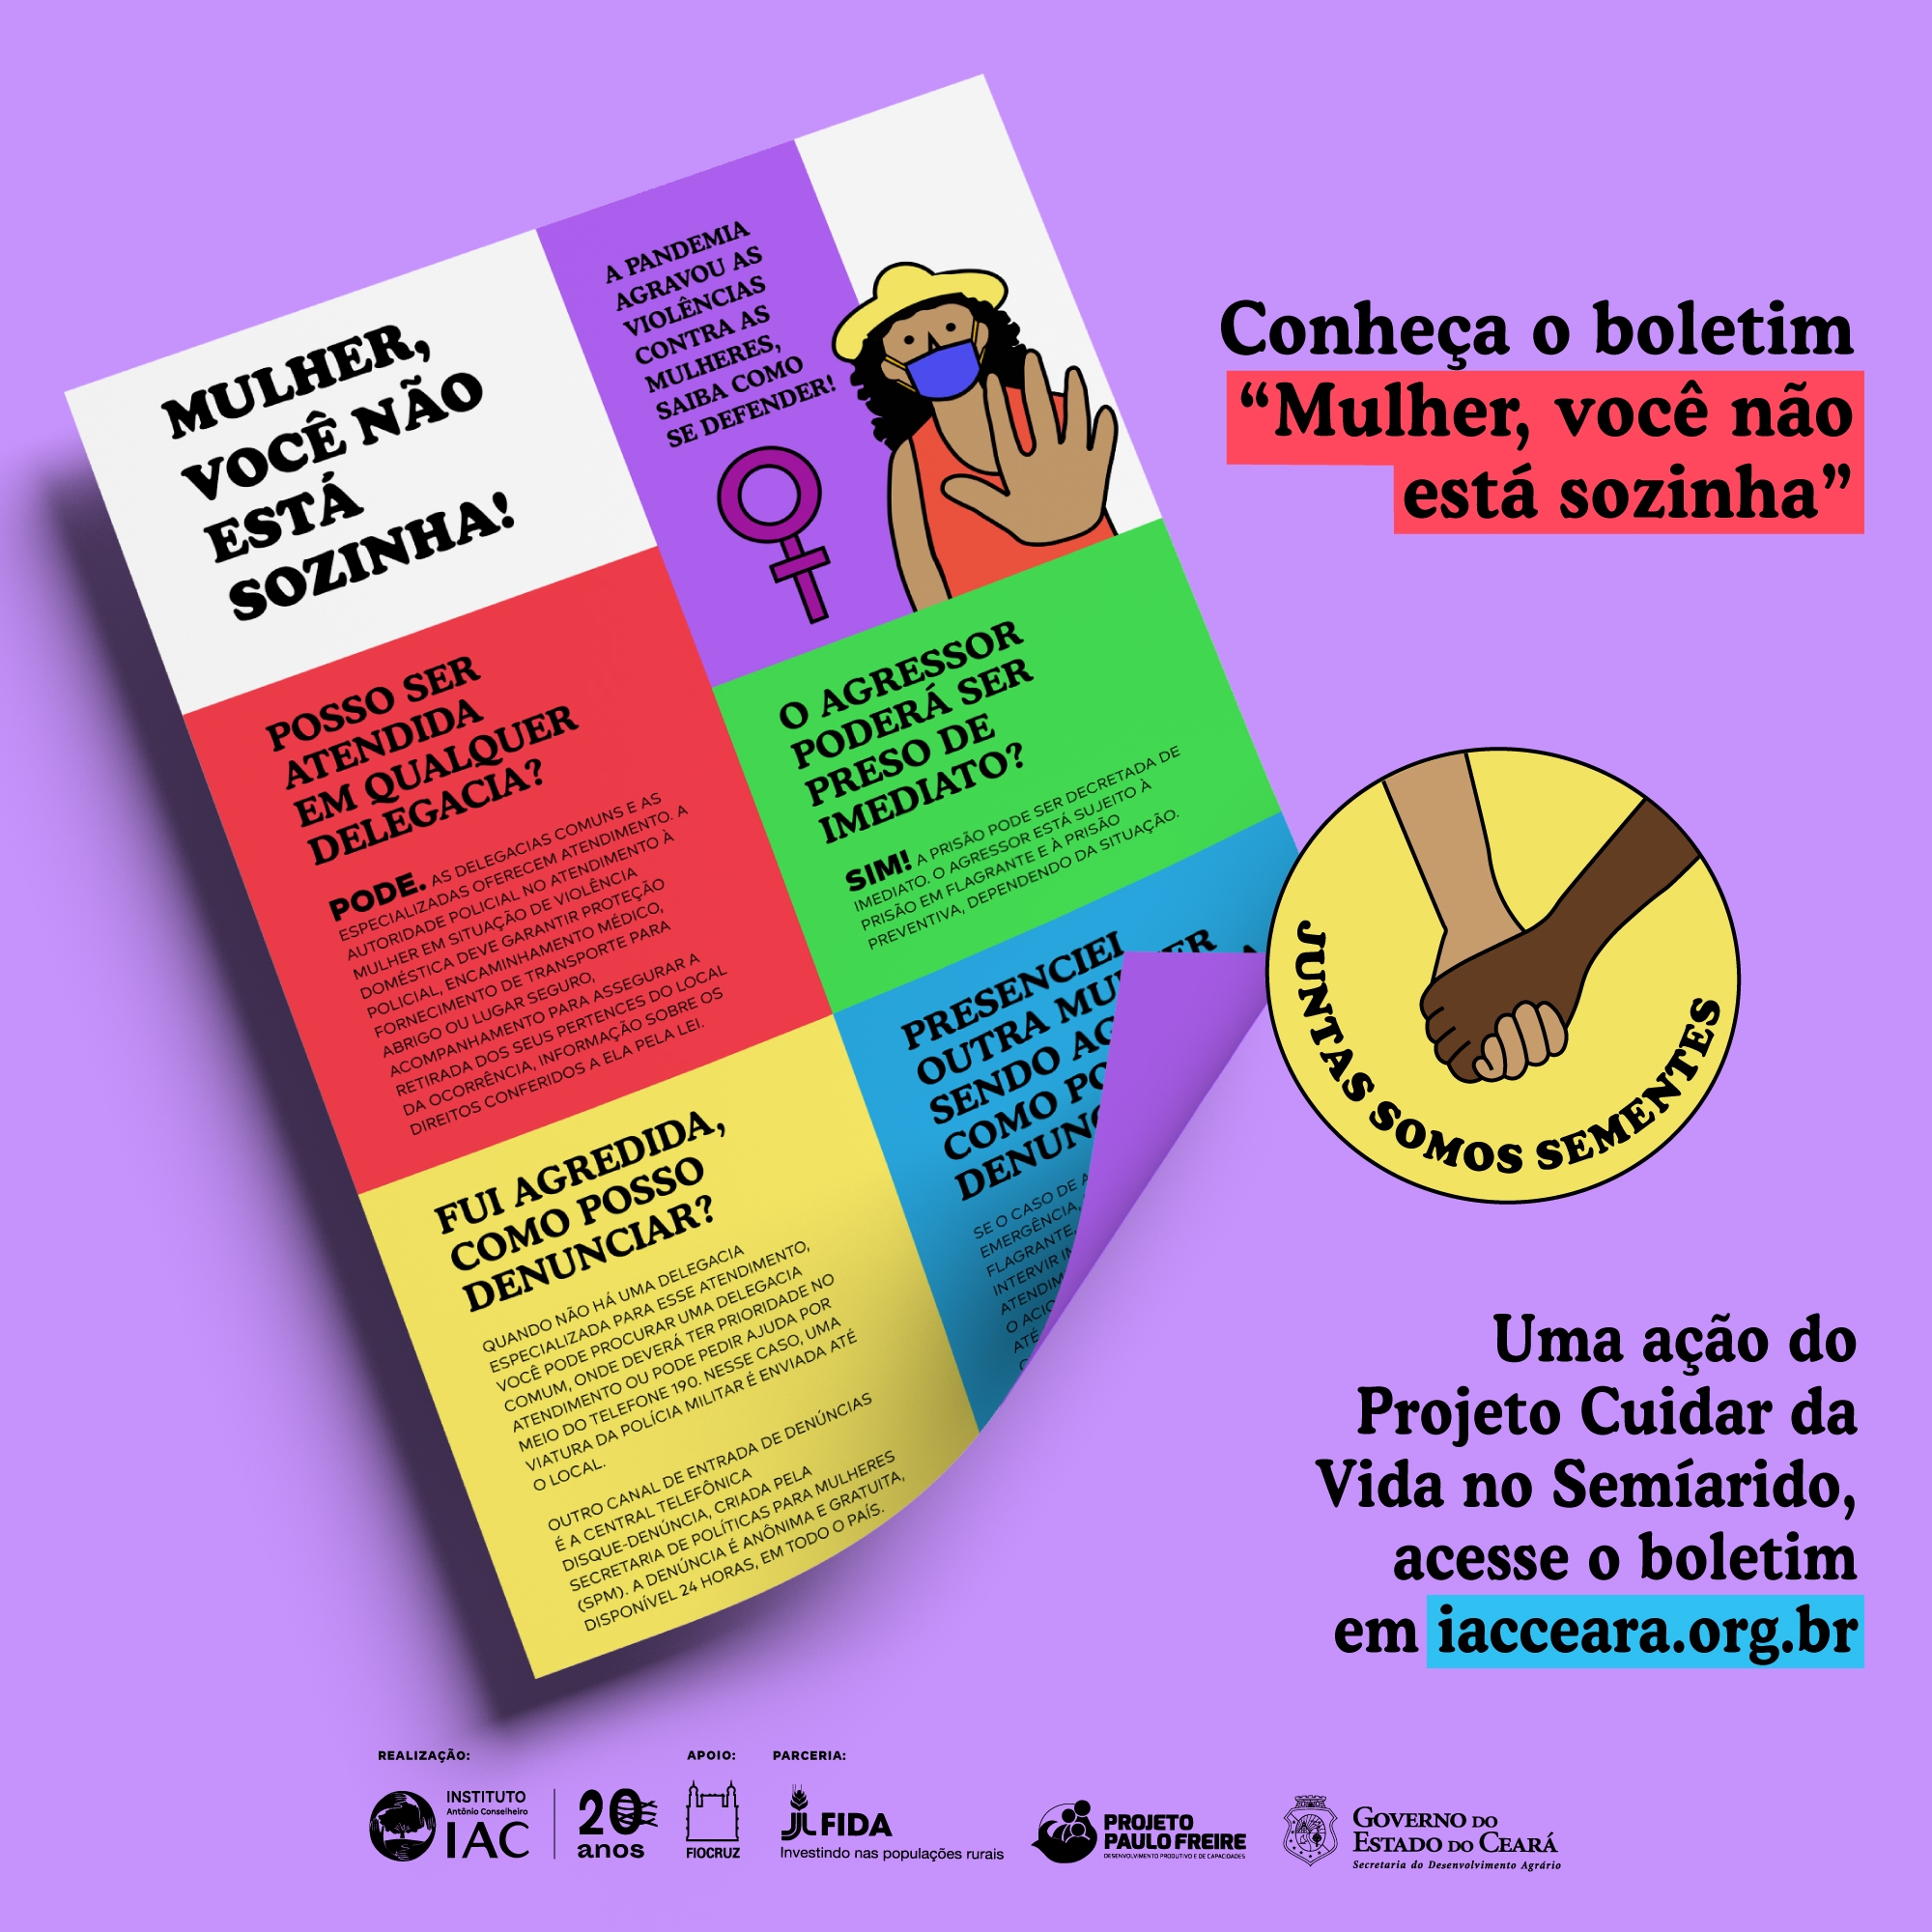 IAC e FIOCRUZ lançam boletim de combate a violência contra as Mulheres